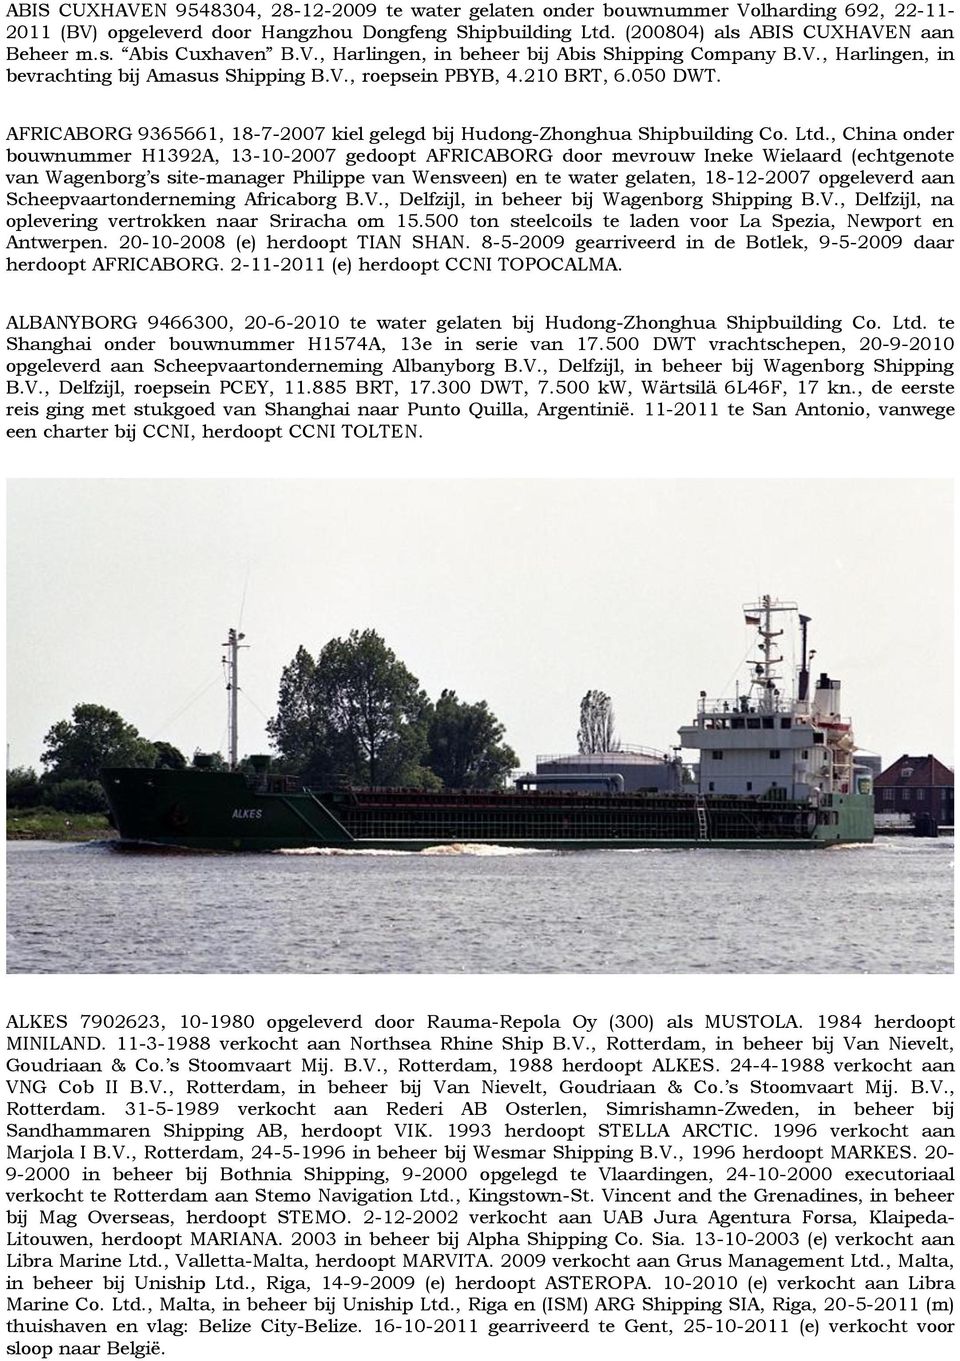 AFRICABORG 9365661, 18-7-2007 kiel gelegd bij Hudong-Zhonghua Shipbuilding Co. Ltd.